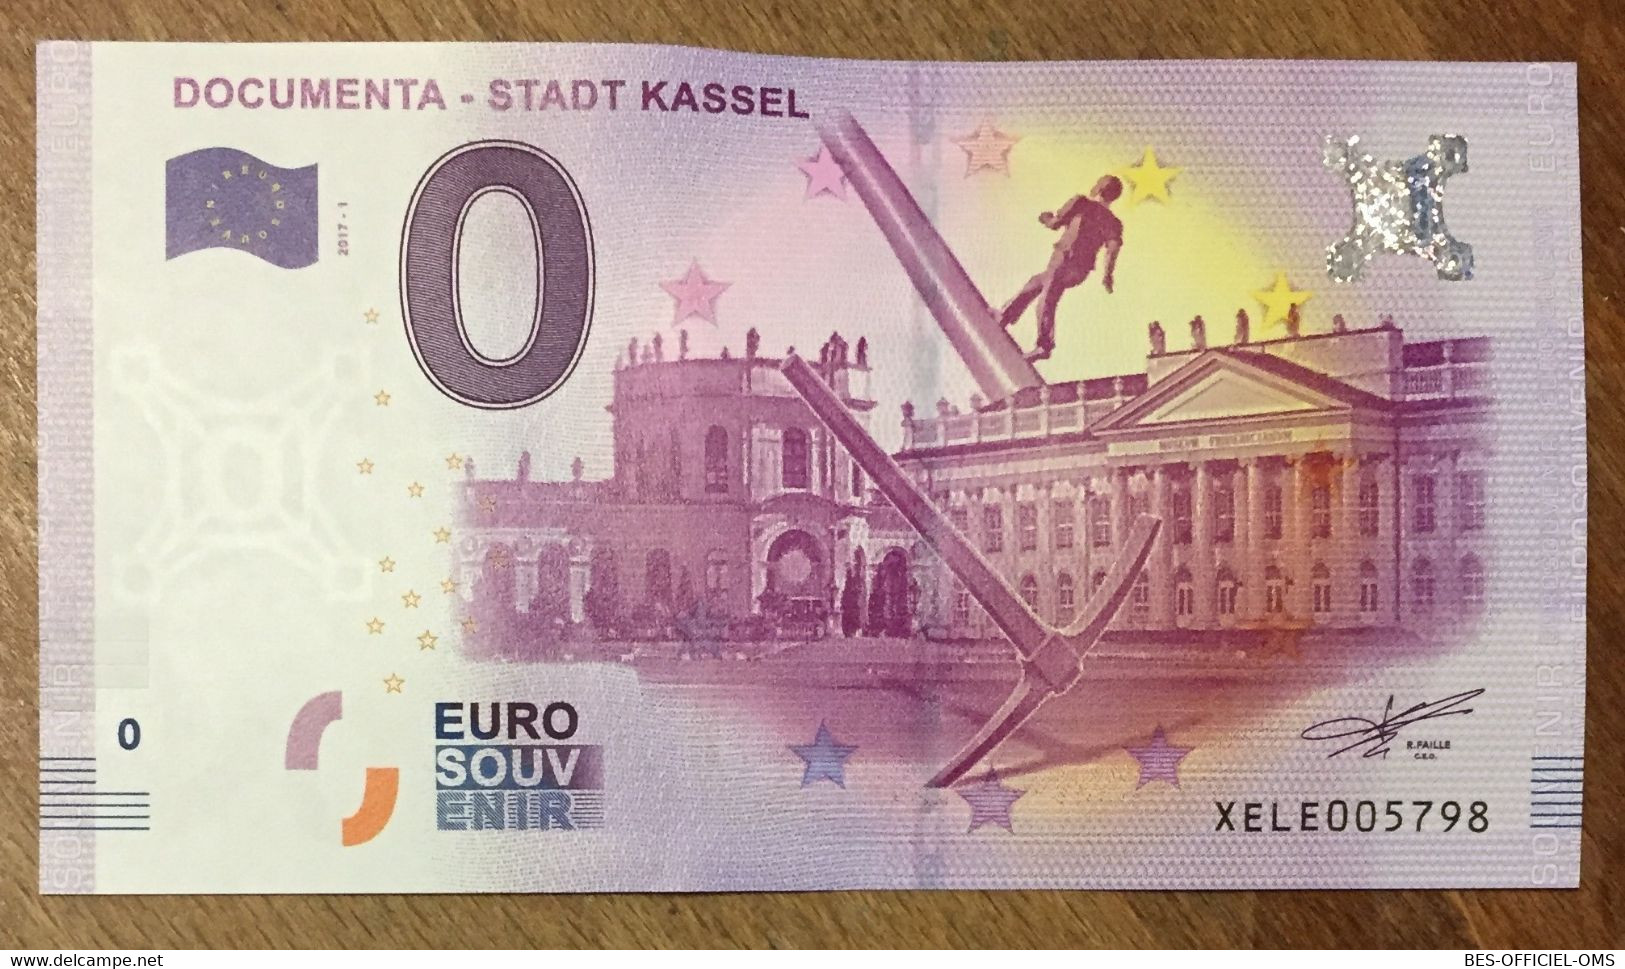 2017 BILLET 0 EURO SOUVENIR ALLEMAGNE DEUTSCHLAND DOCUMENTA-STADT KASSEL ZERO 0 EURO SCHEIN BANKNOTE PAPER MONEY - Specimen